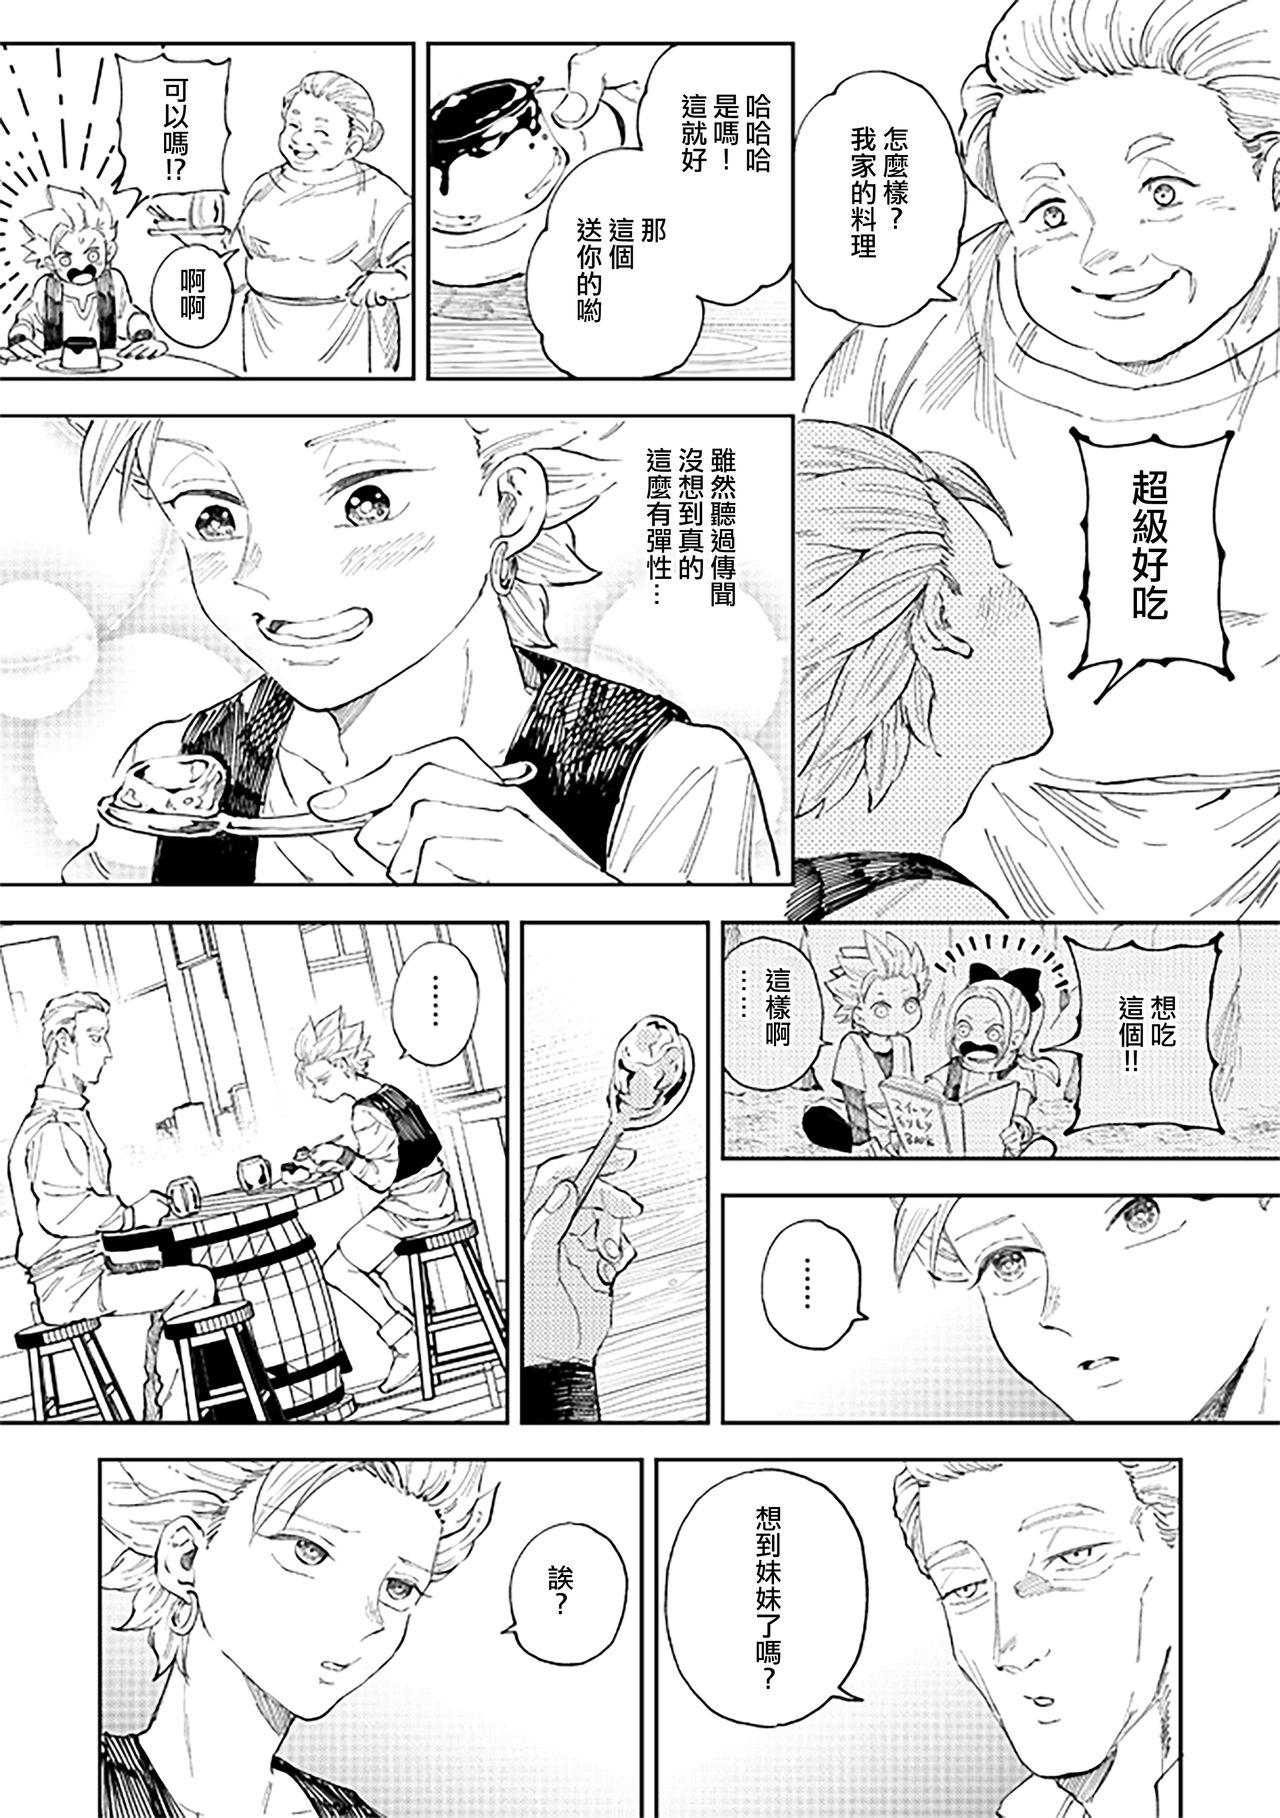 Party Rental Kamyu-kun 6 day - Dragon quest xi Black Thugs - Page 8